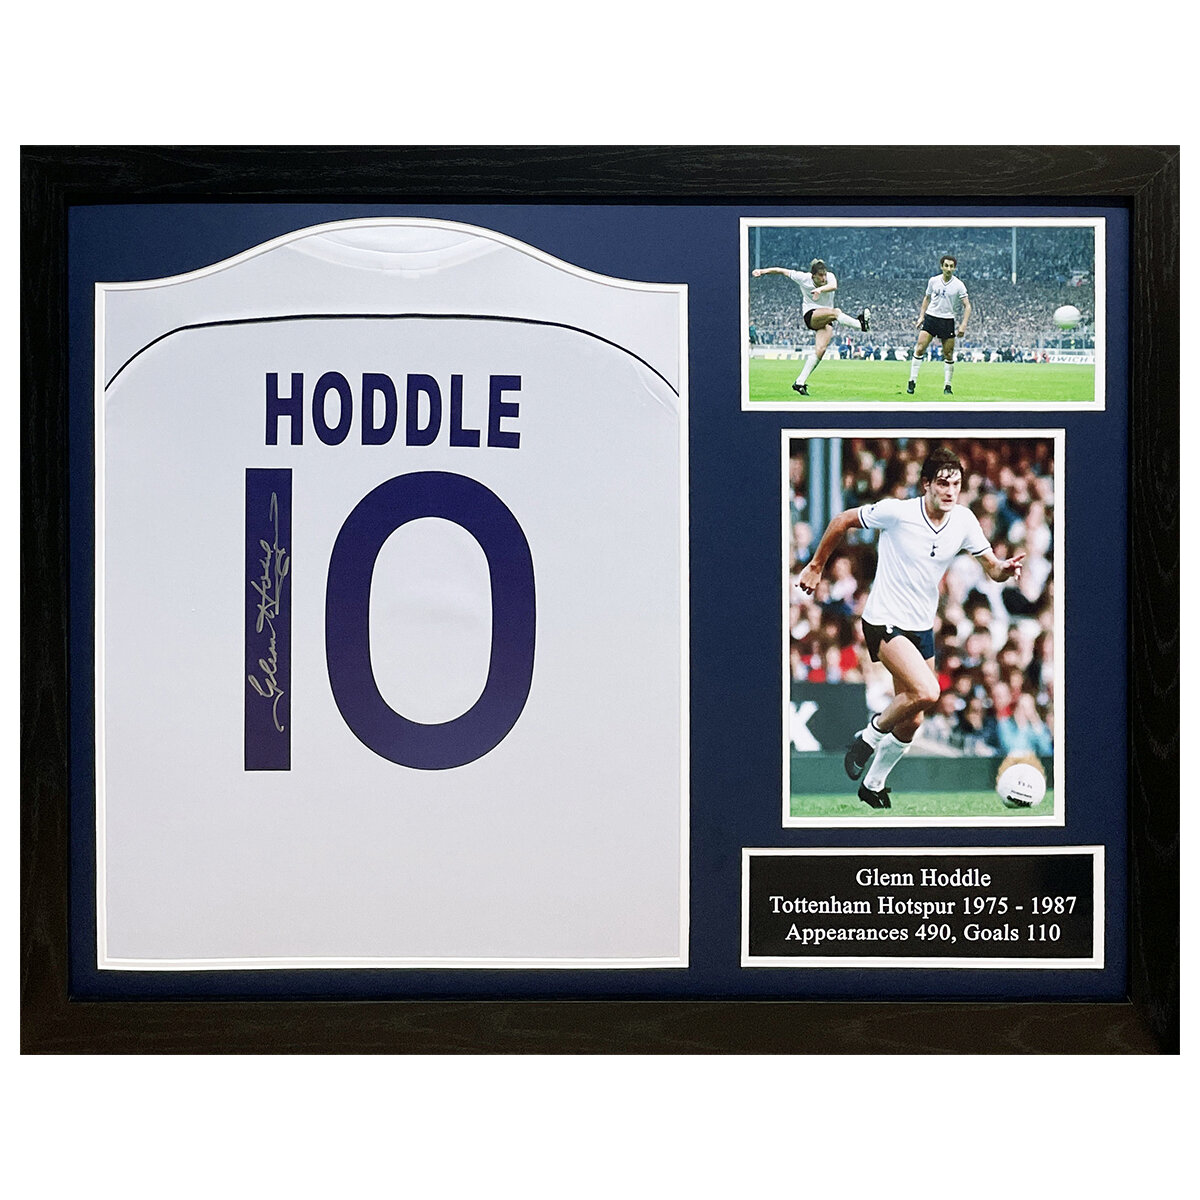 Glen Hoddle Signed Framed Football Shirt